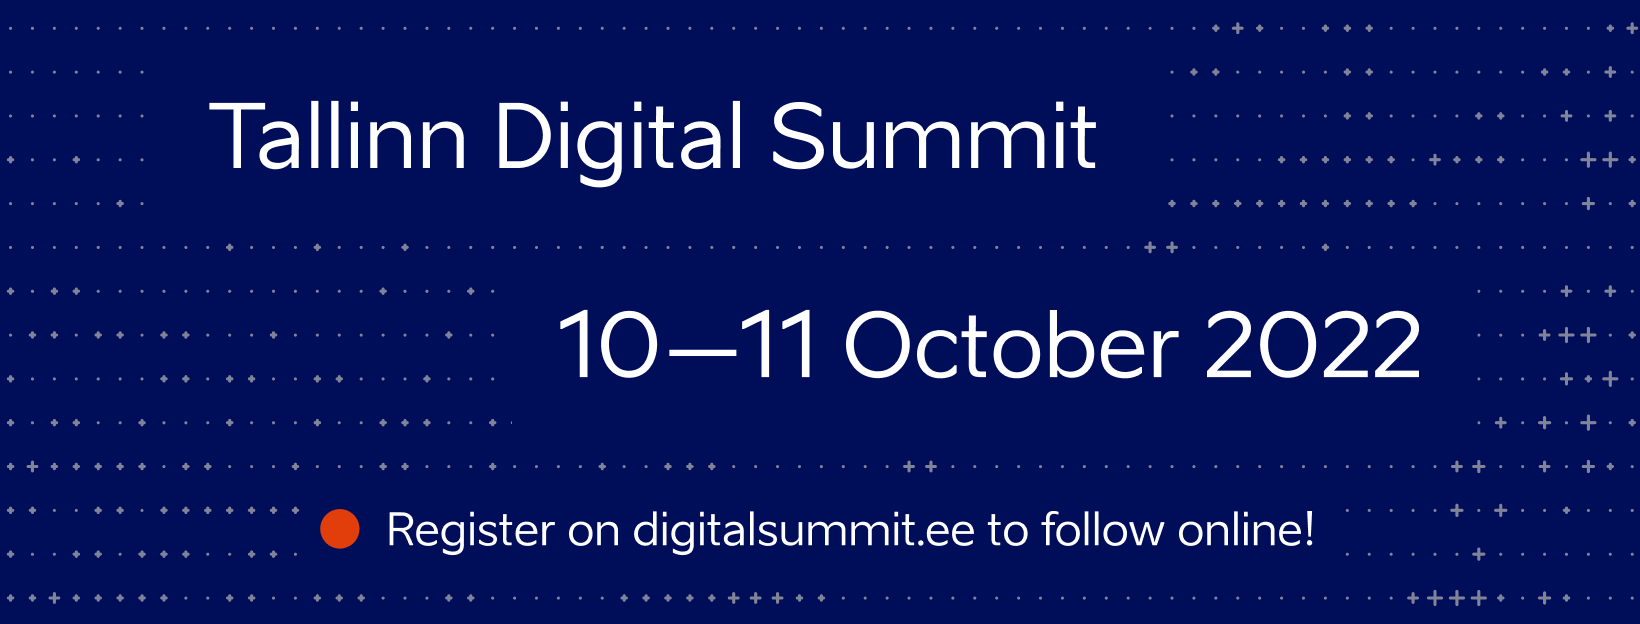 14884Tallinn Digital Summit